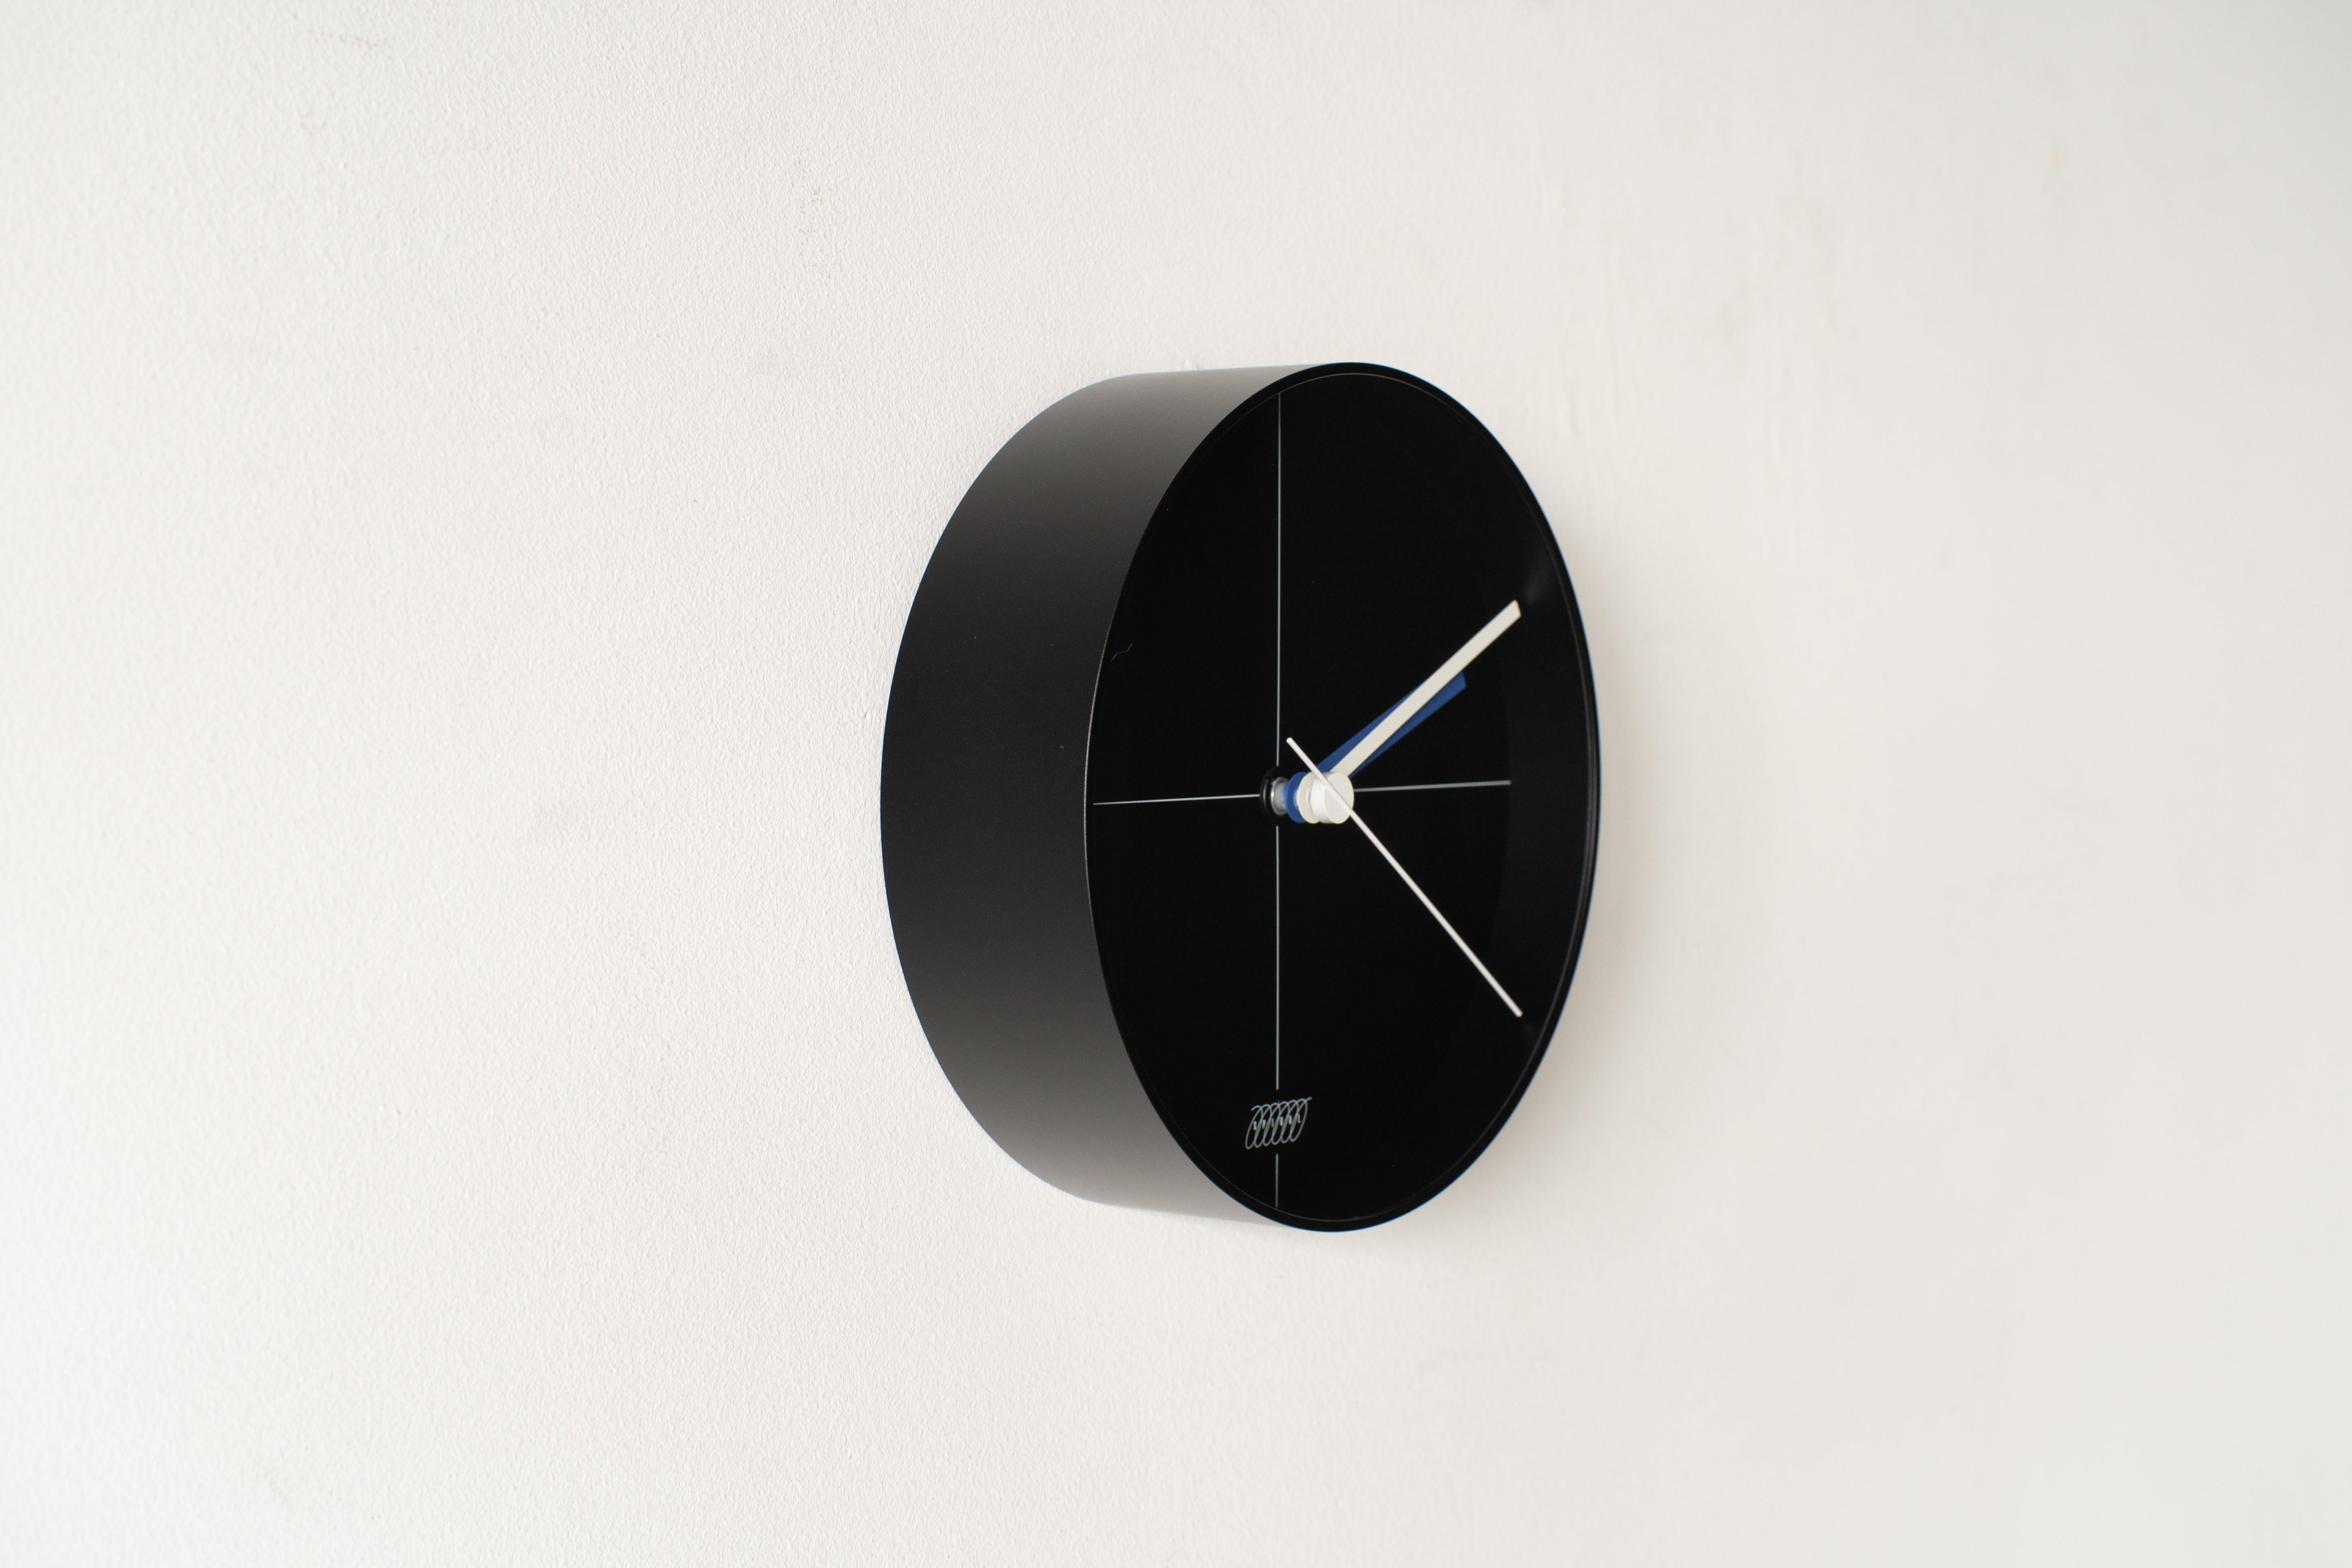 Horloge spirale B #3 corps noir conçu par Shiro Kuramata. Le cadran se trouve à l'intérieur d'un abat-jour arrondi à bord acrylique.
 